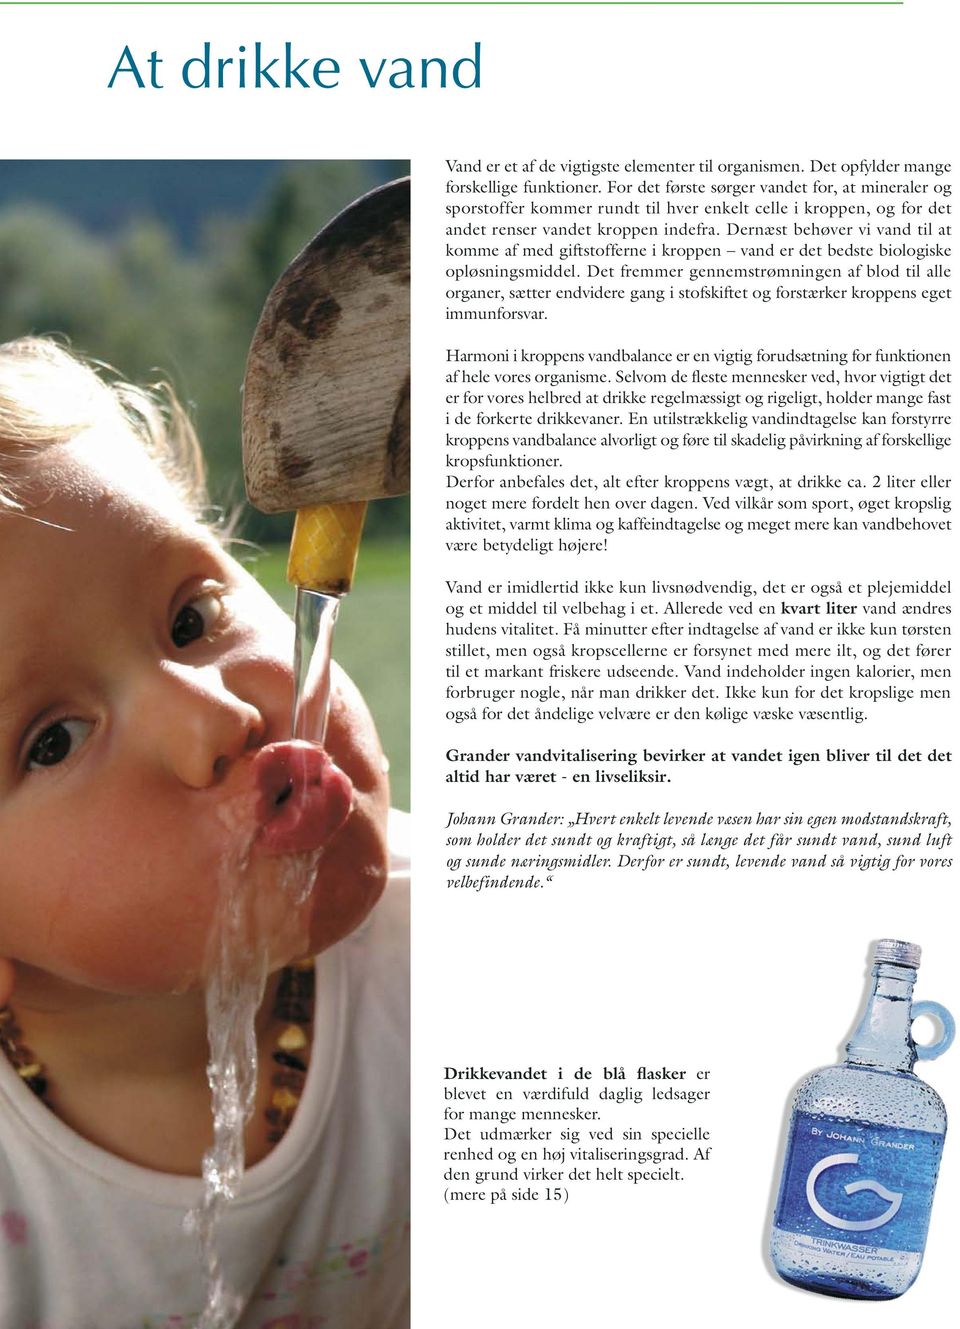 Dernæst behøver vi vand til at komme af med giftstofferne i kroppen vand er det bedste biologiske opløsningsmiddel.